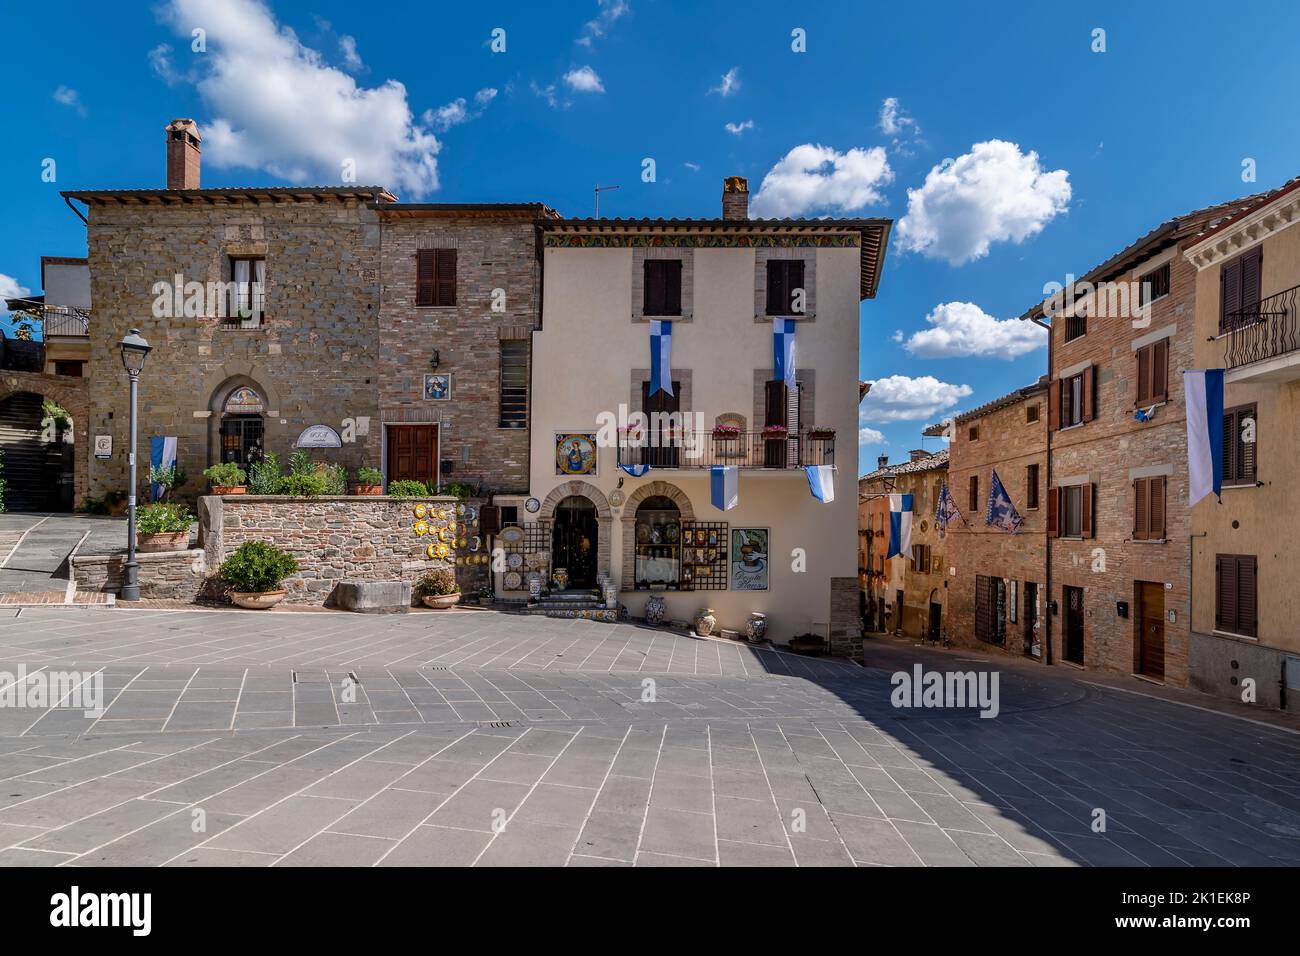 Un vistazo al centro histórico de Deruta, Perugia, Italia, con las tiendas de cerámica Foto de stock